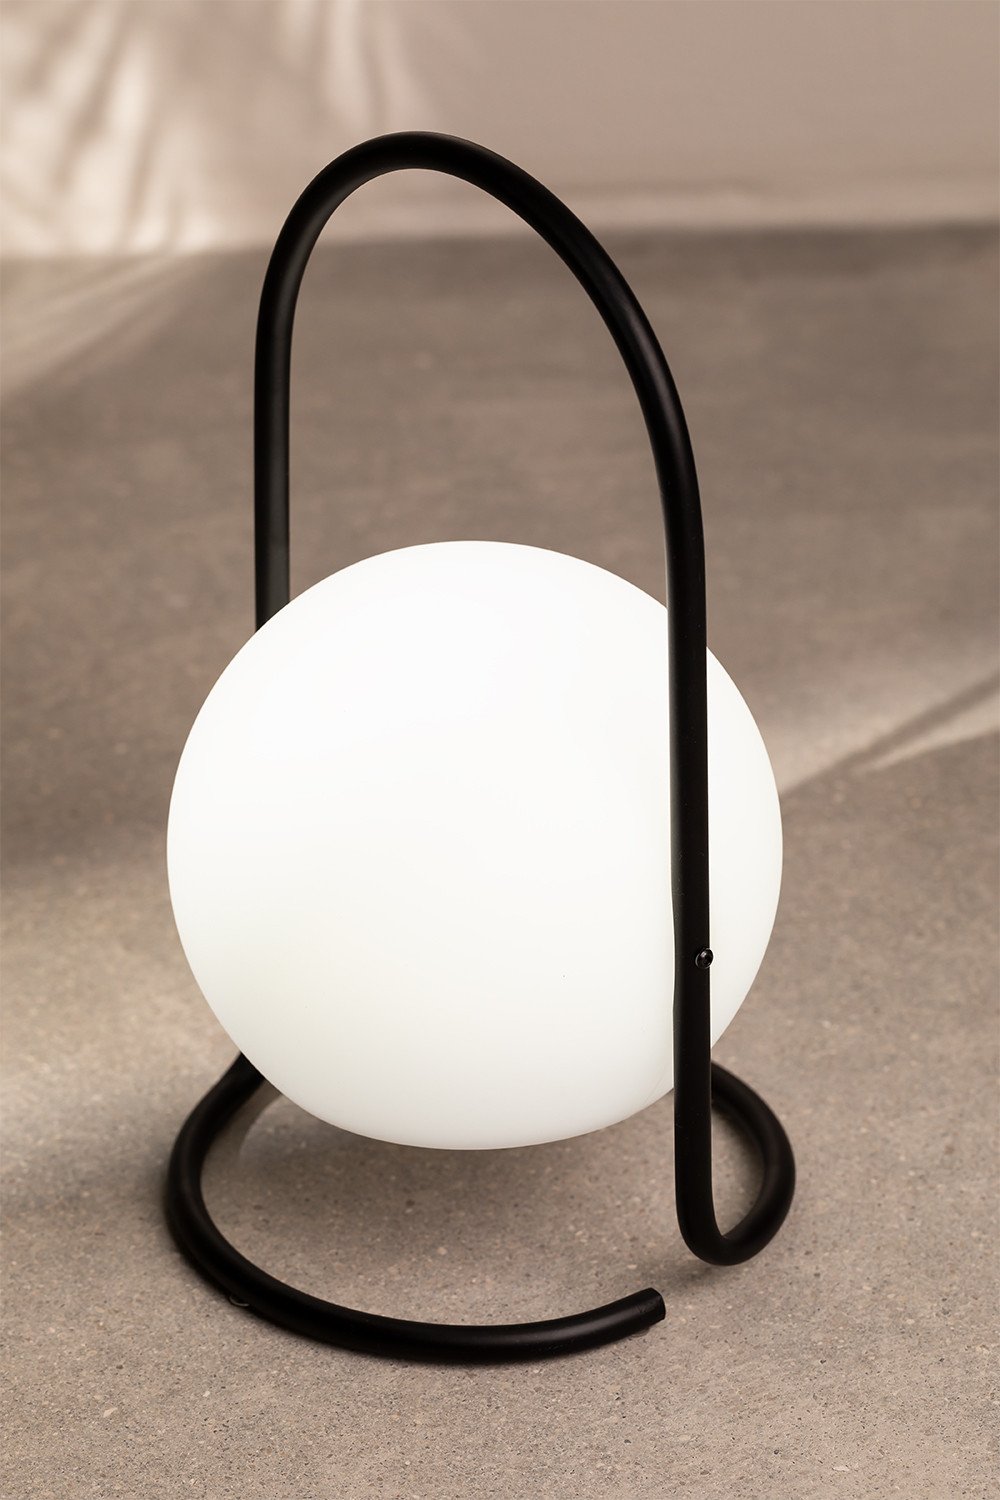 Draadloze LED-tafellamp Balum, galerij beeld 1